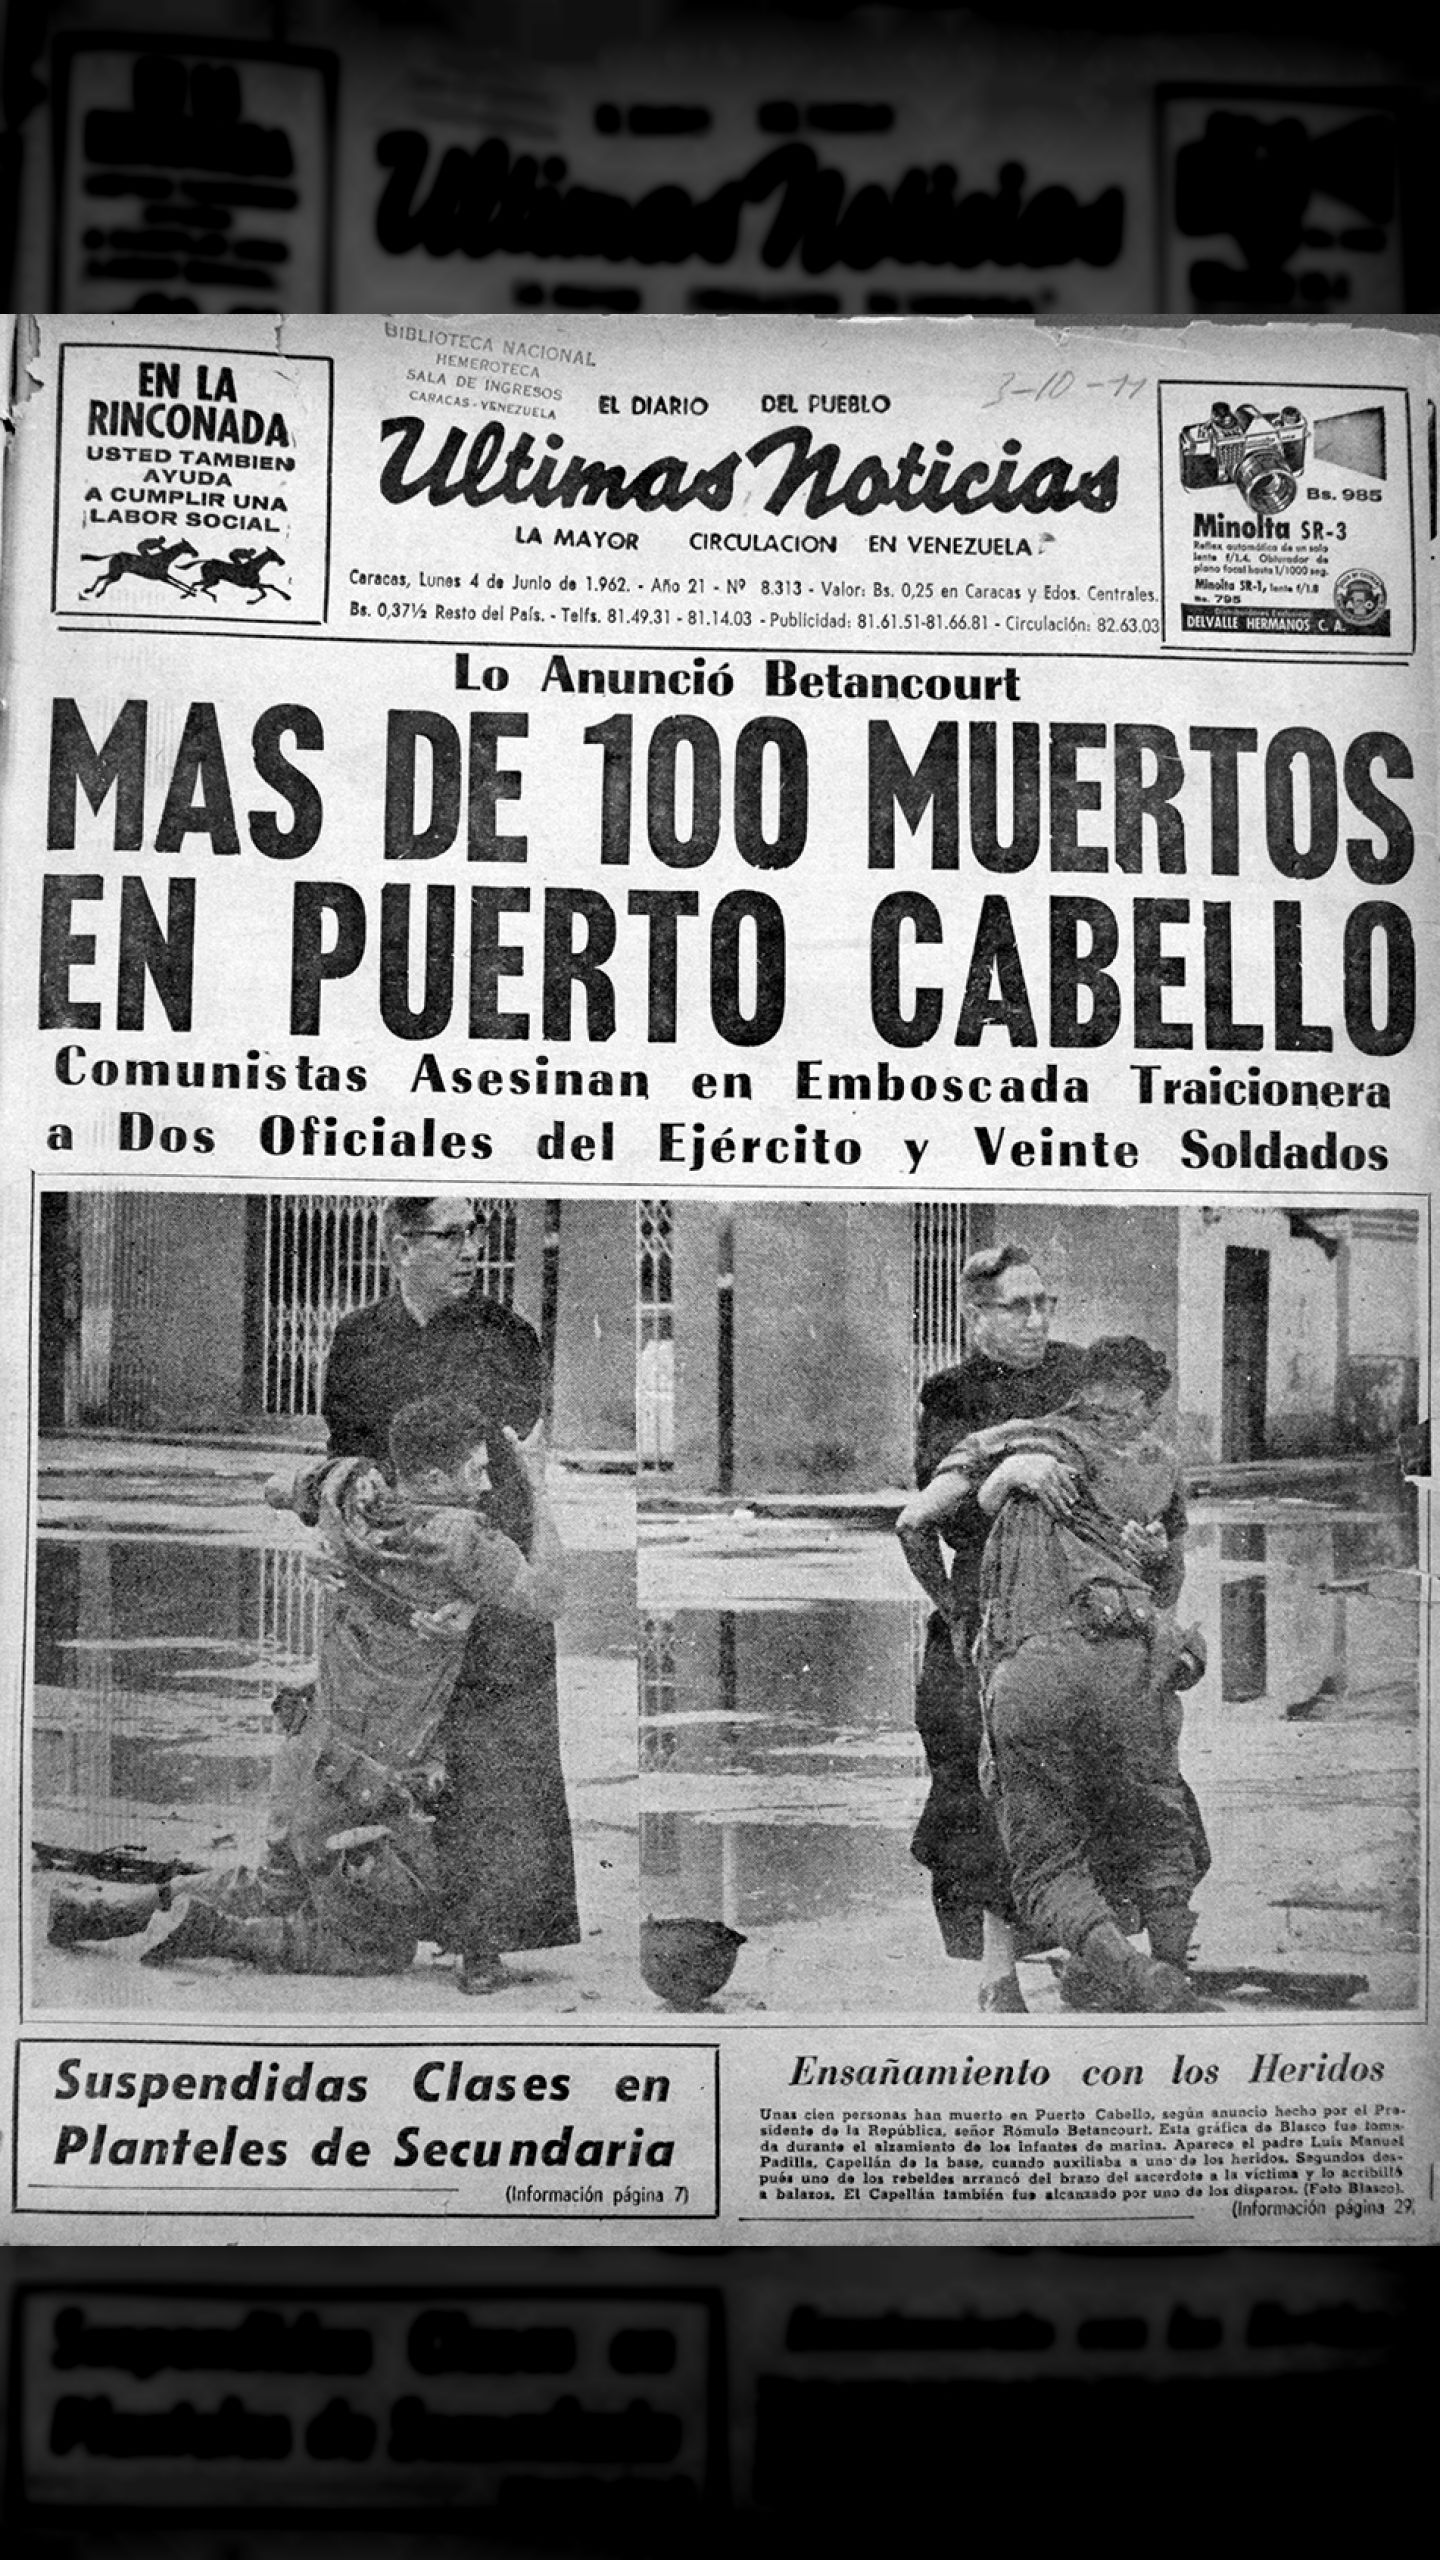 Más de 100 muertos en Puerto Cabello (Últimas Noticias, 4 de junio 1962)